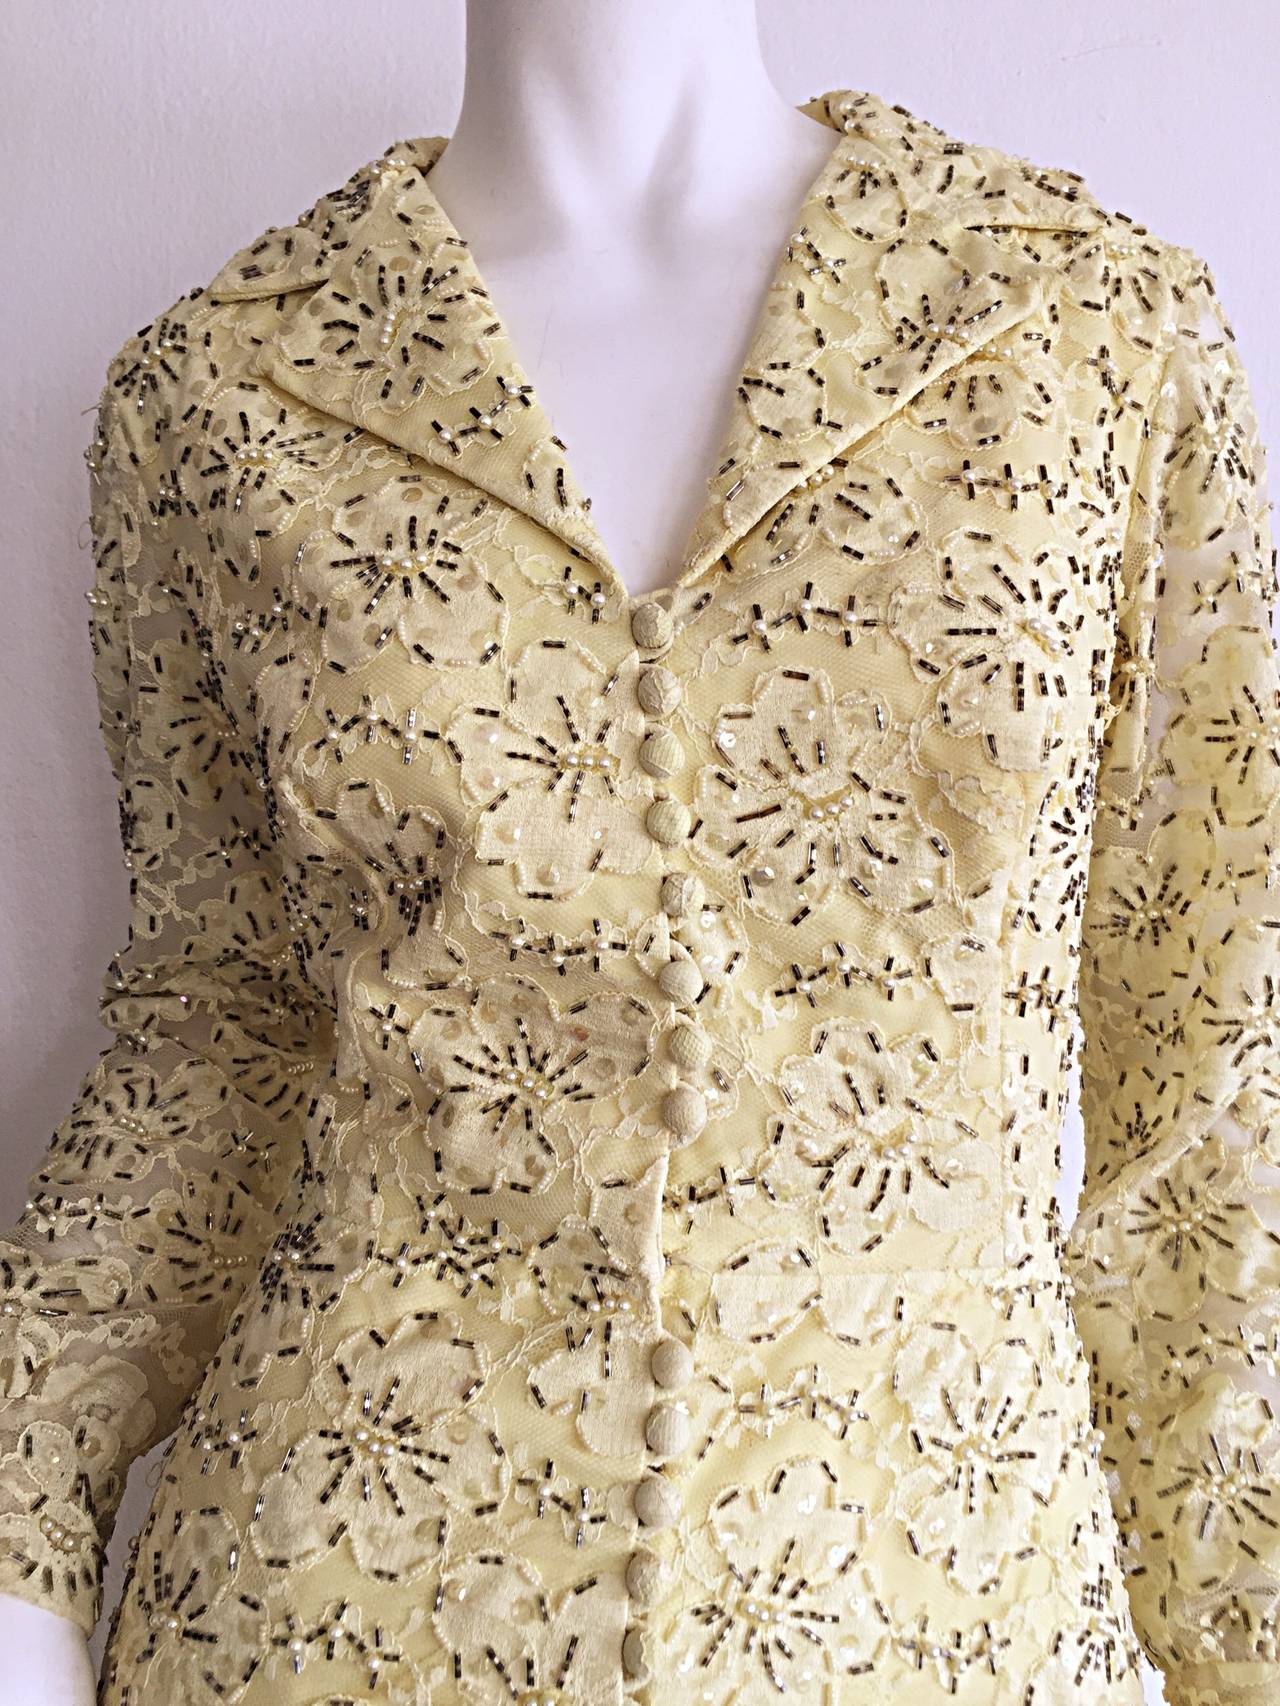 Magnifique robe vintage en dentelle jaune pâle de la fin des années 1960 / début des années 1970. Les perles sont abondantes et s'harmonisent avec la dentelle. Des milliers de perles et de paillettes ornent cette magnifique robe ! Boutons